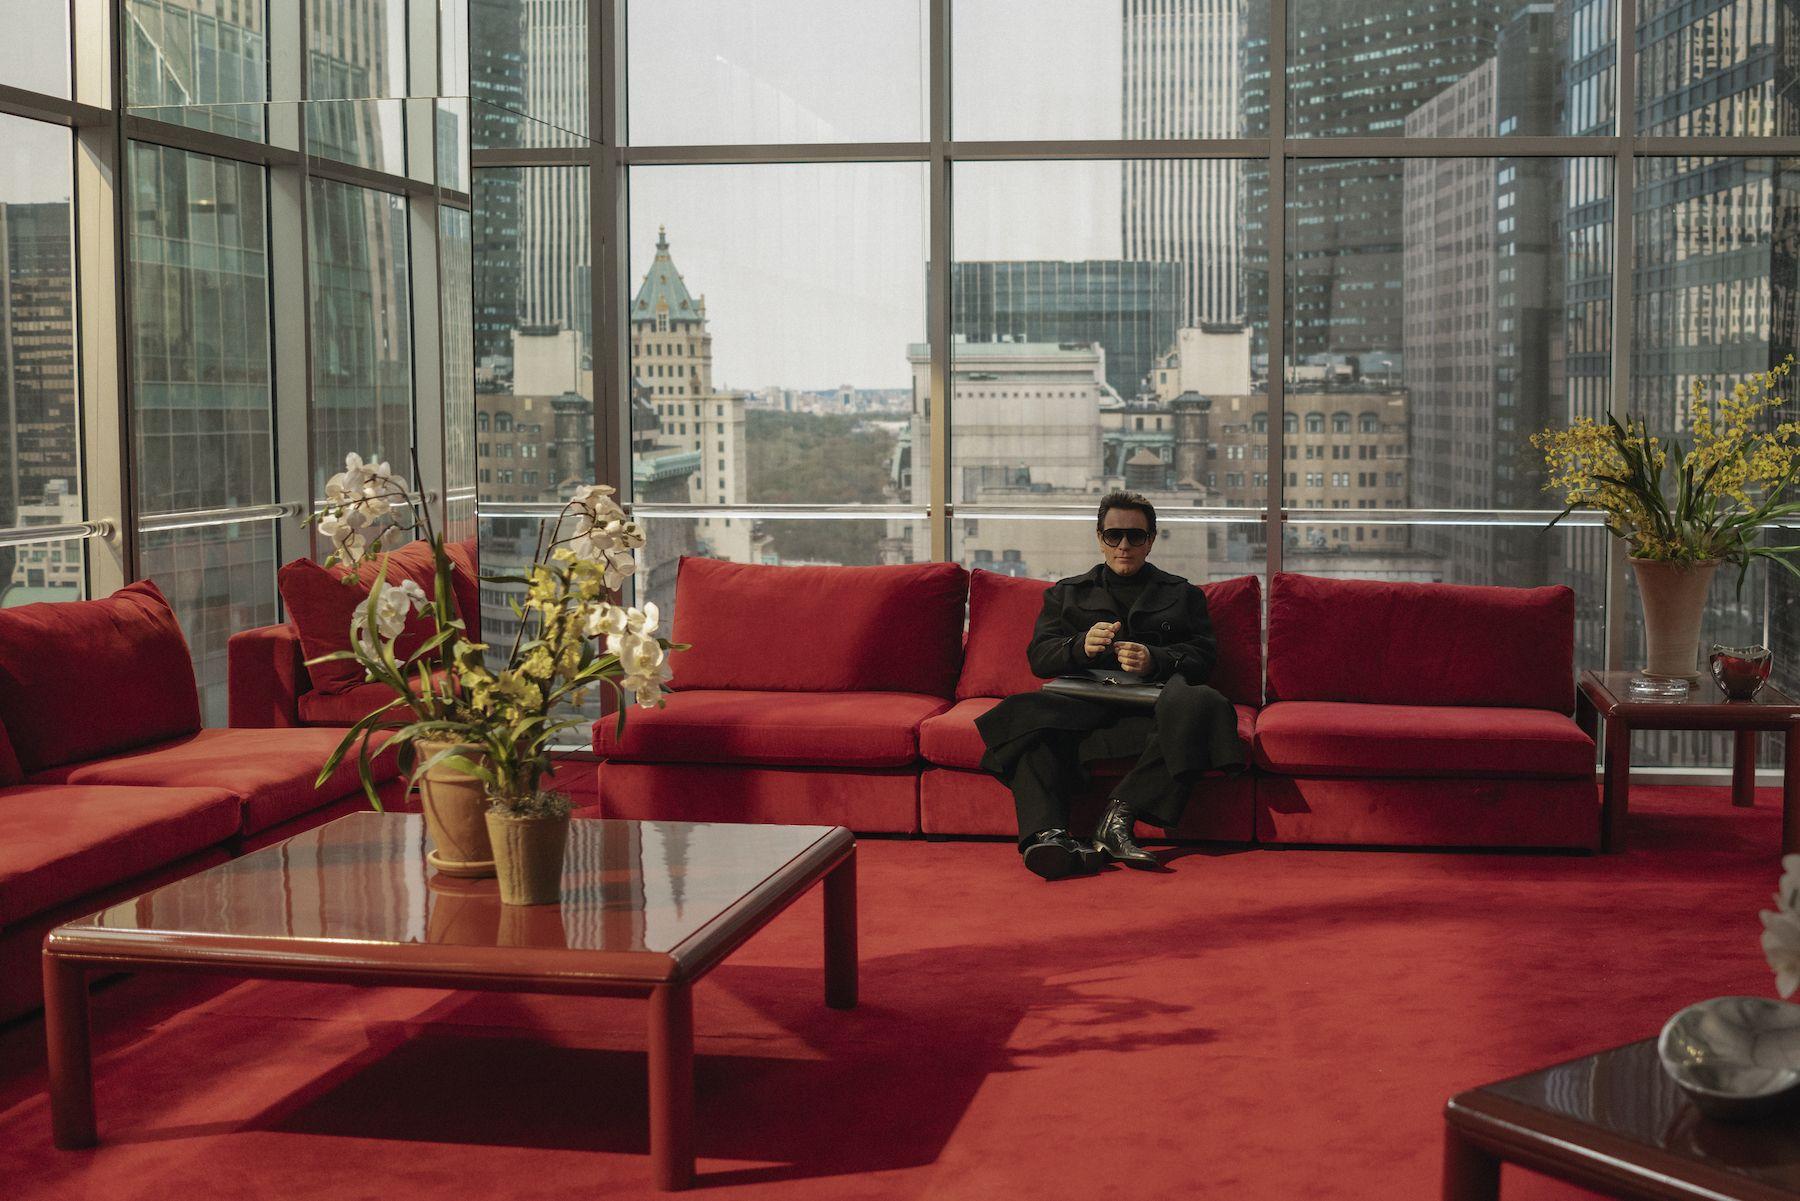 Cena da série Halston. Ewan McGregor está no fundo da imagem, vestido inteiramente de preto. Ele está sentado em um sofá vermelo, que combina com o carpete também vermelho da sala. Ao seu redor, todas as paredes são de vidro, assim como a mesinha no canto esquerdo, que contém um vaso com orquídeas.